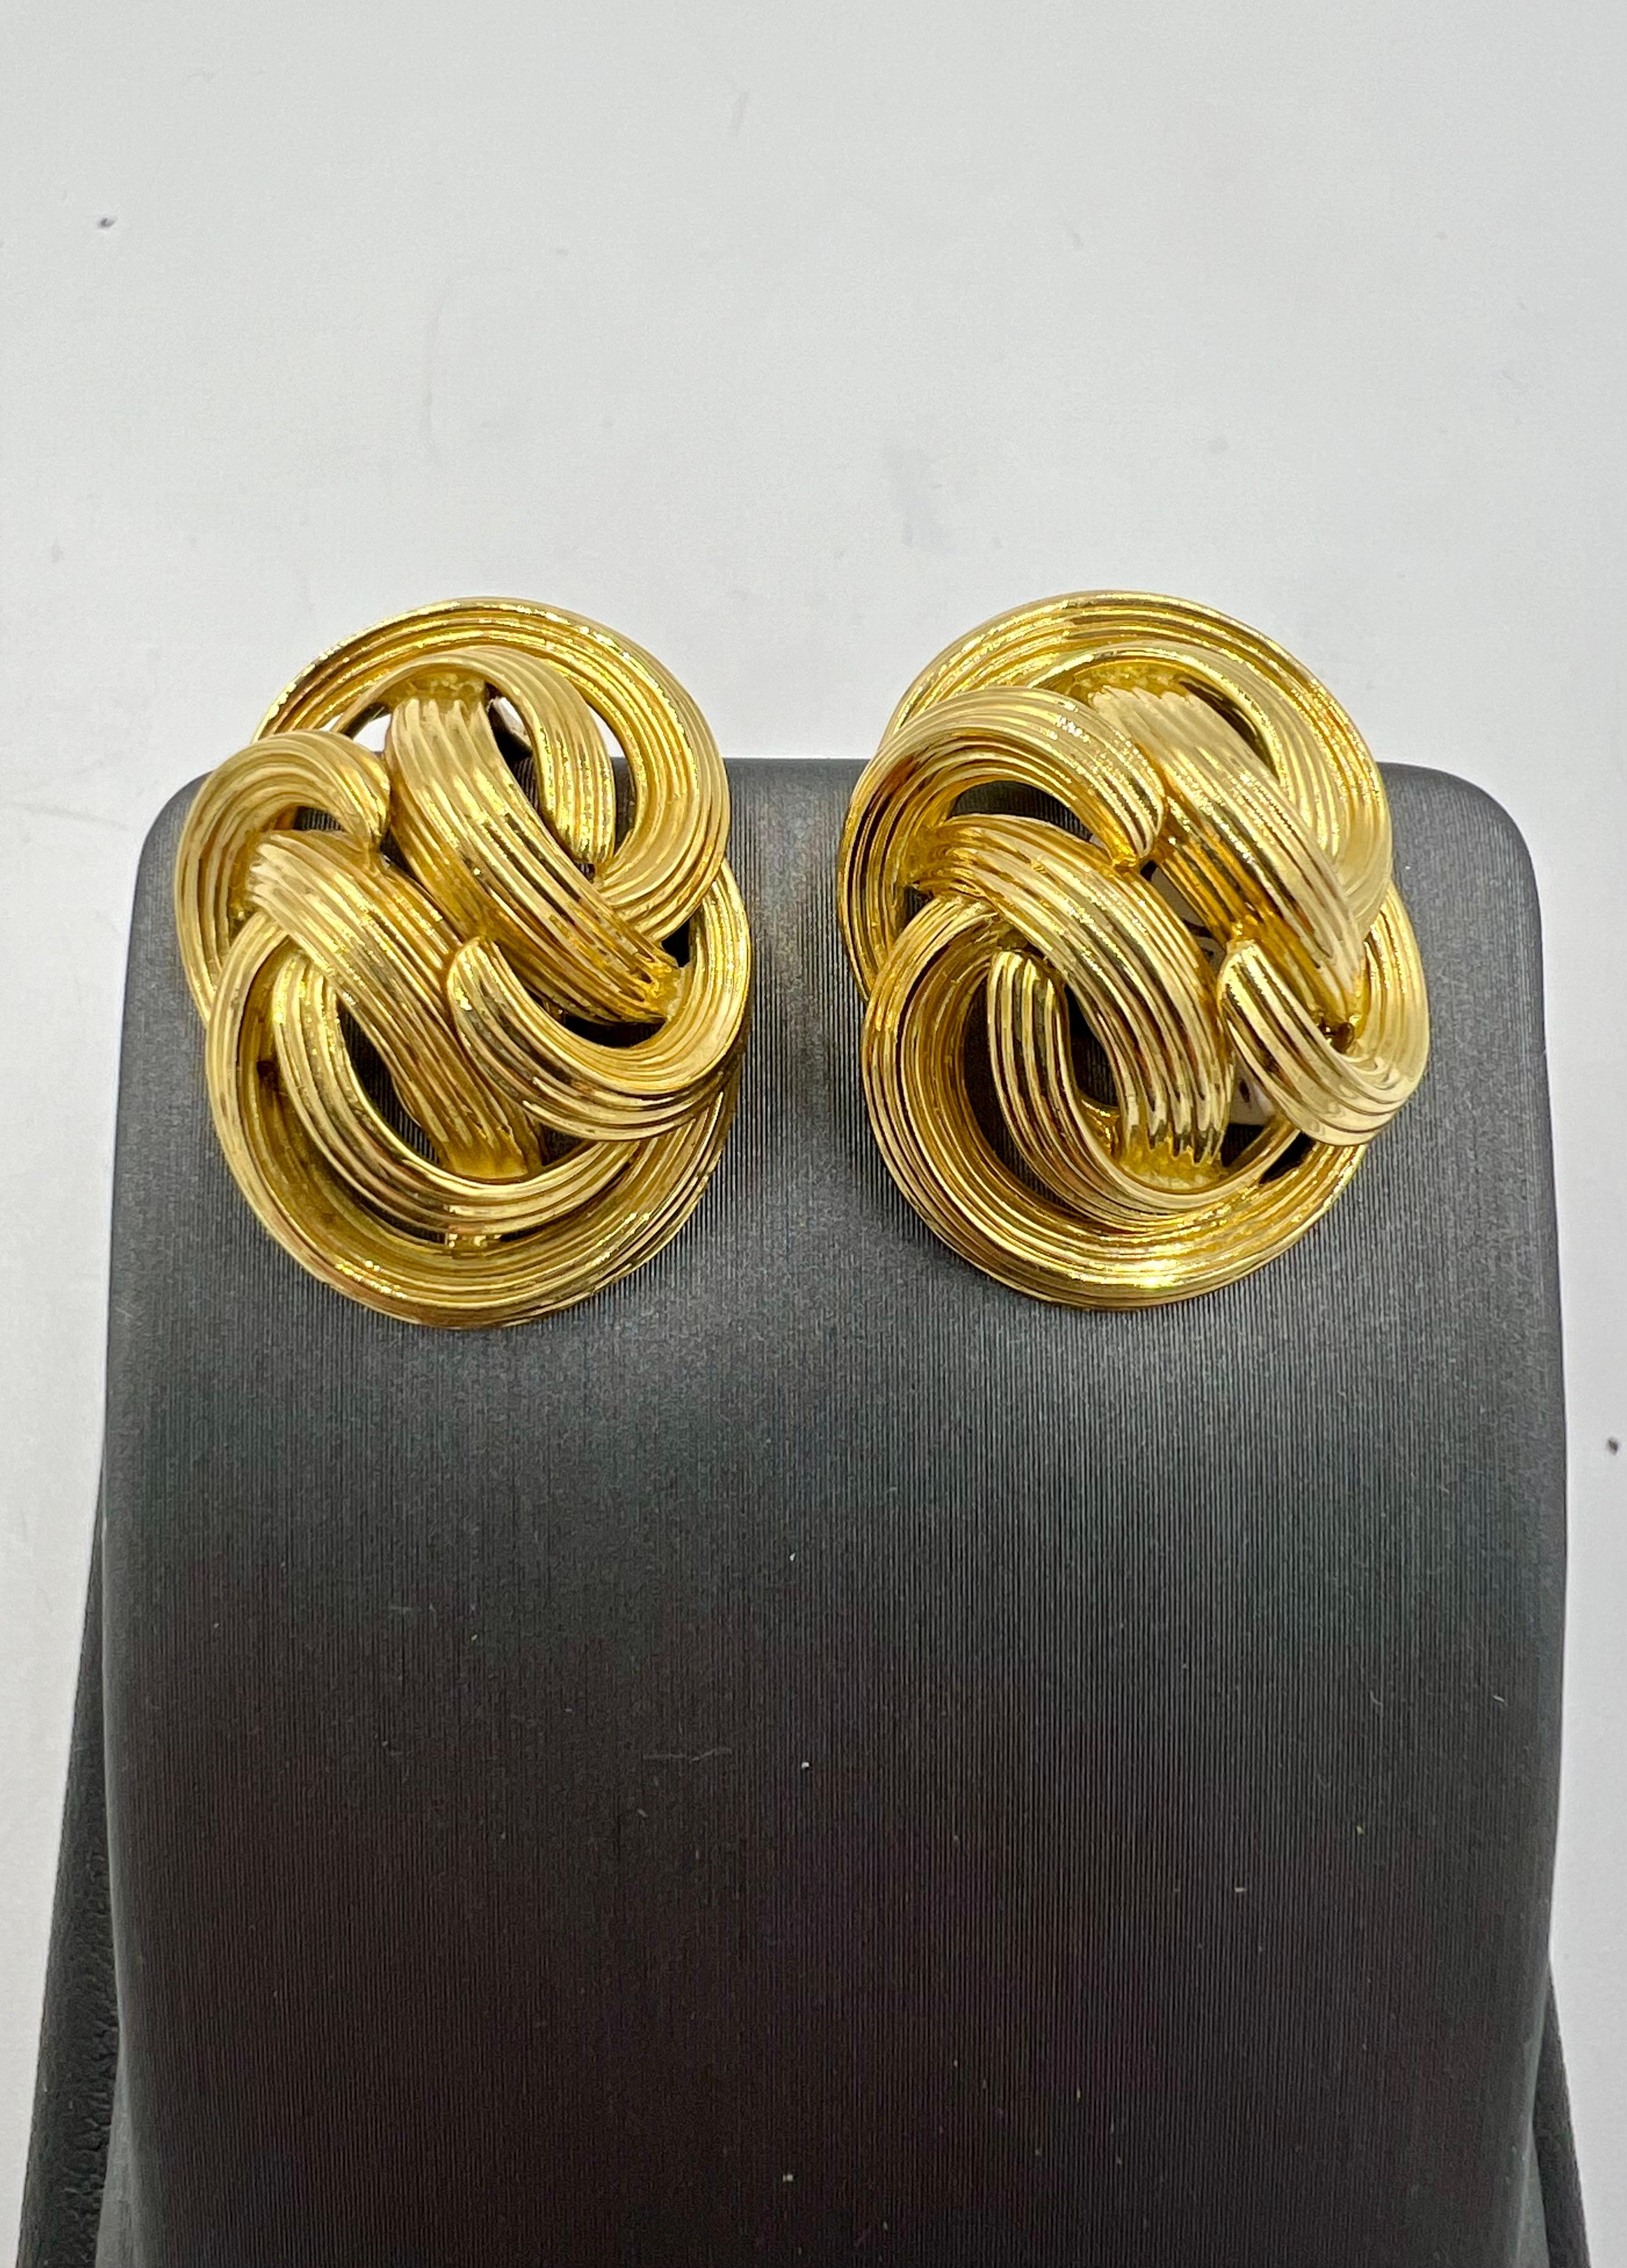 Boucles d'oreilles à clip en or jaune cannelé de Tiffany, circa 1980

Les boucles d'oreilles à pince en or jaune cannelé de Tiffany sont un accessoire intemporel et élégant qui respire la sophistication et le style. Réalisées en or jaune luxueux,